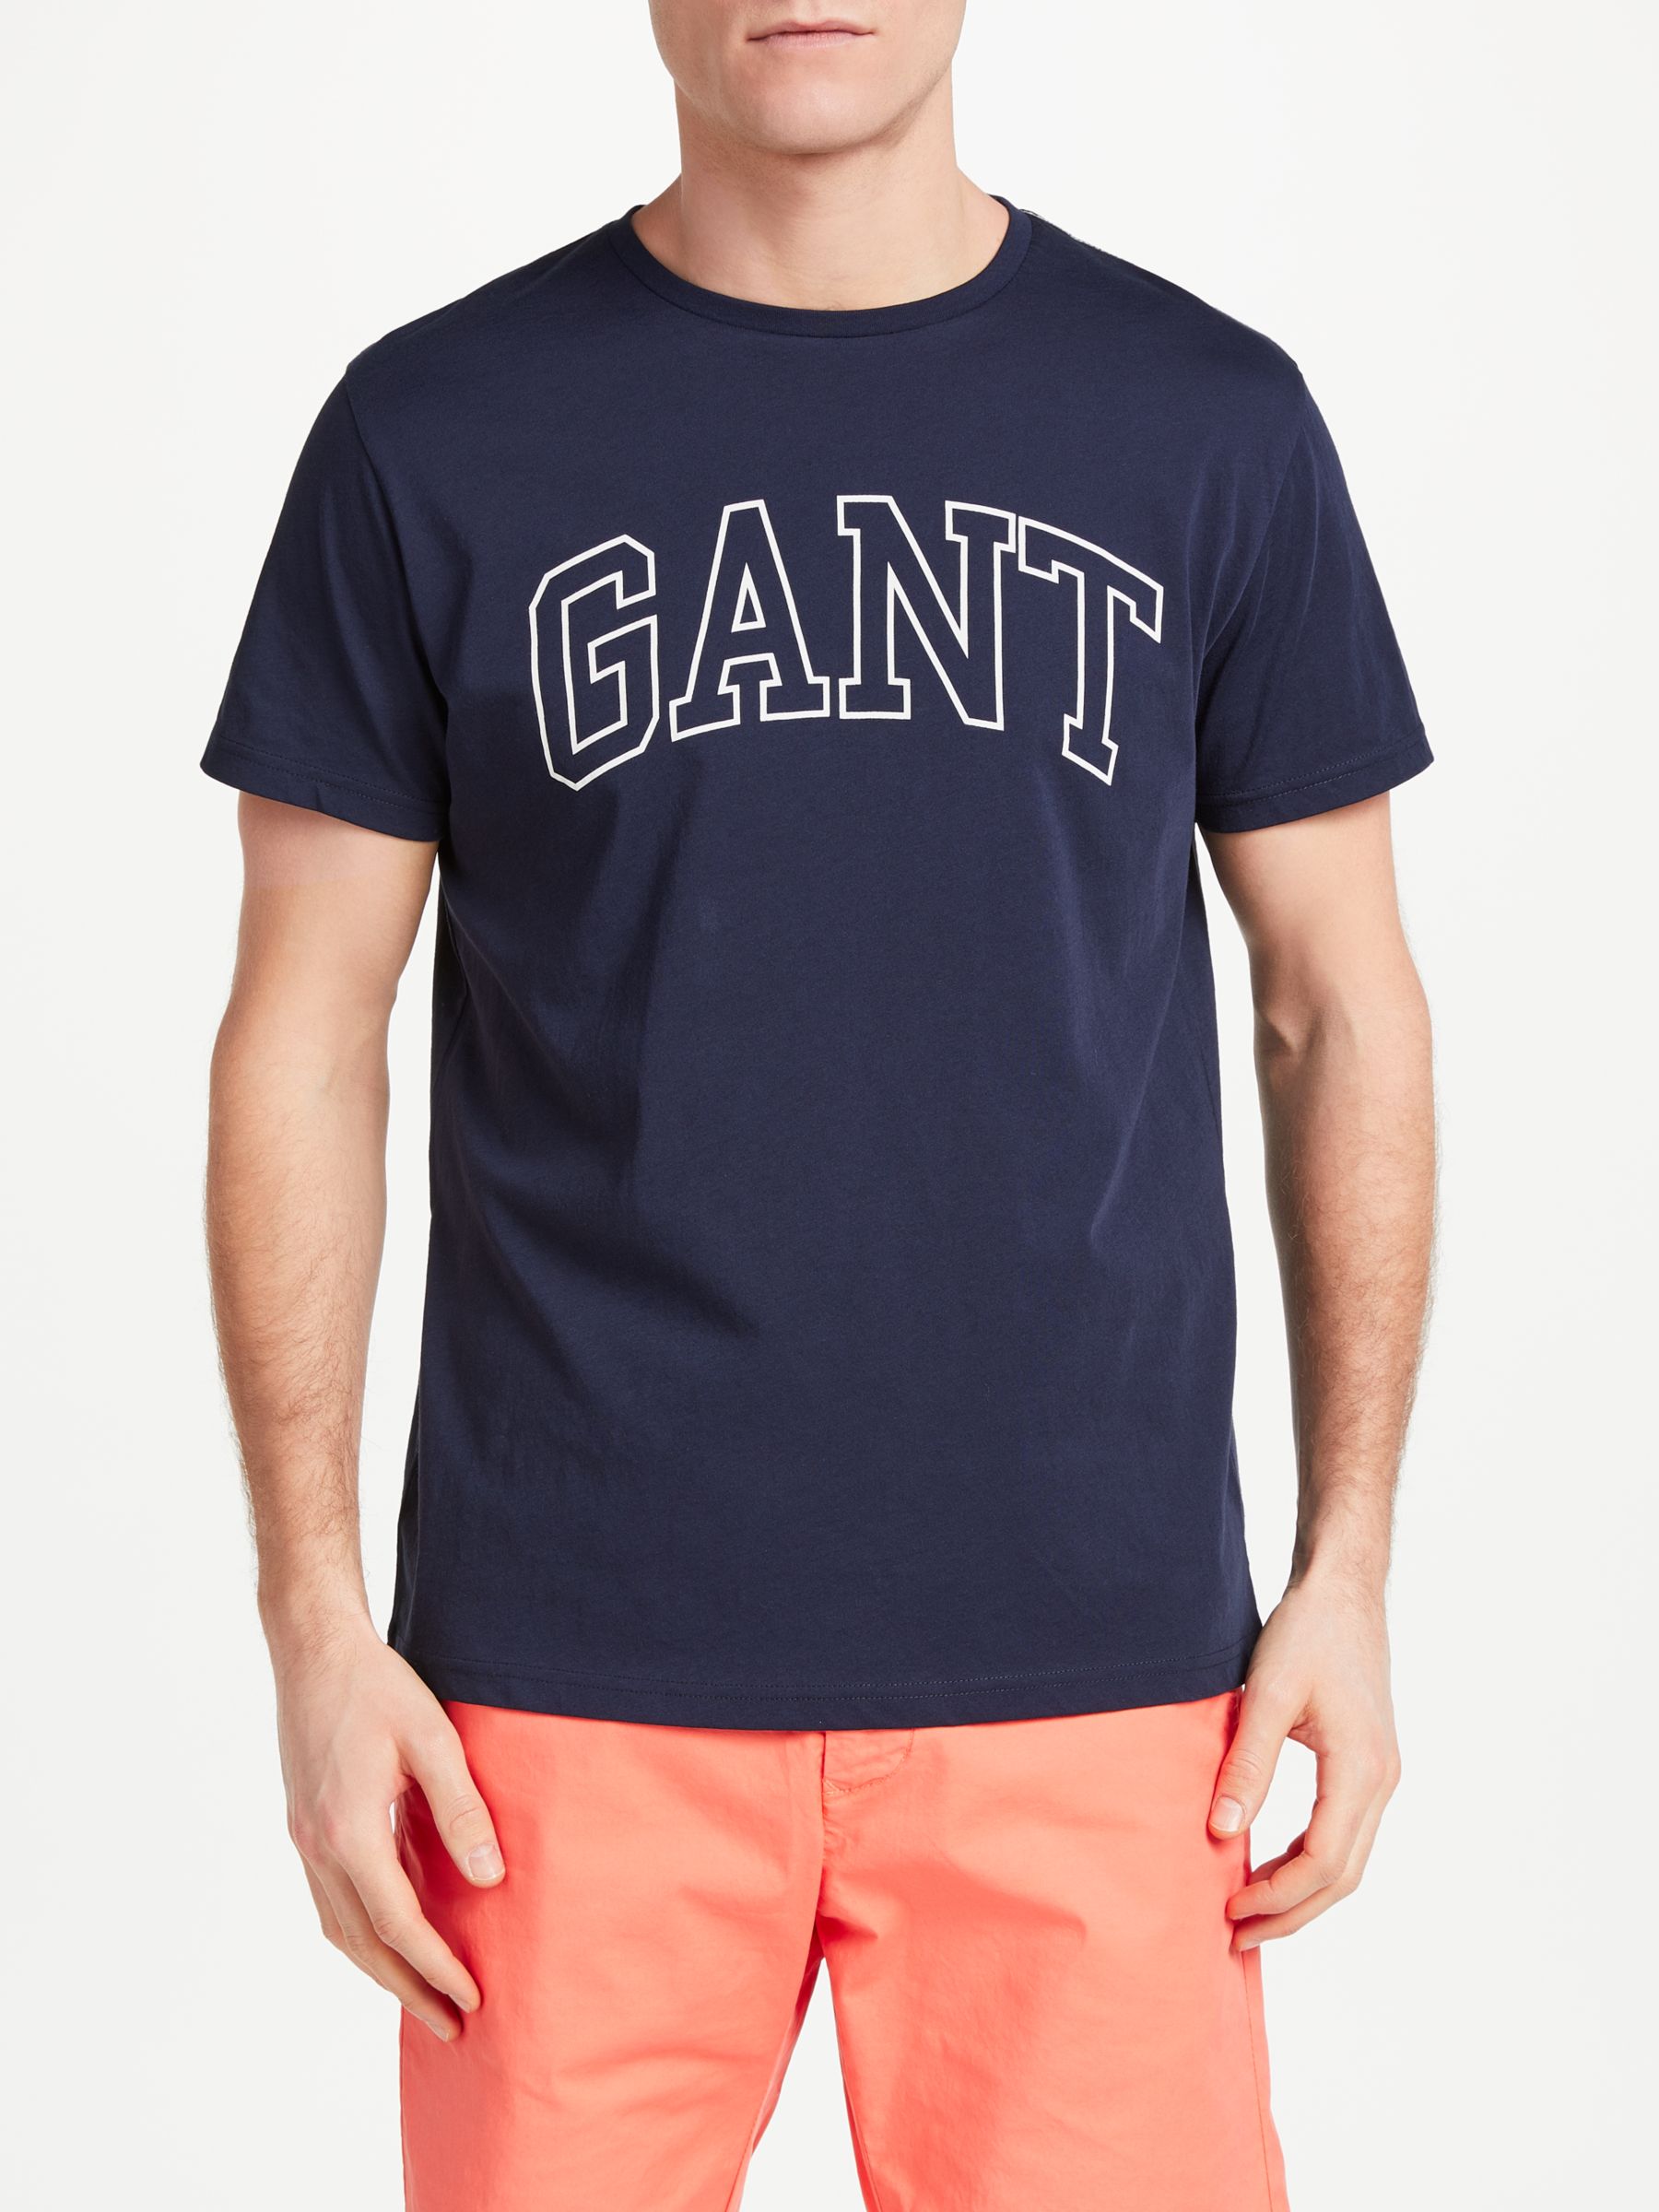 Gant Outline Print Cotton T-Shirt